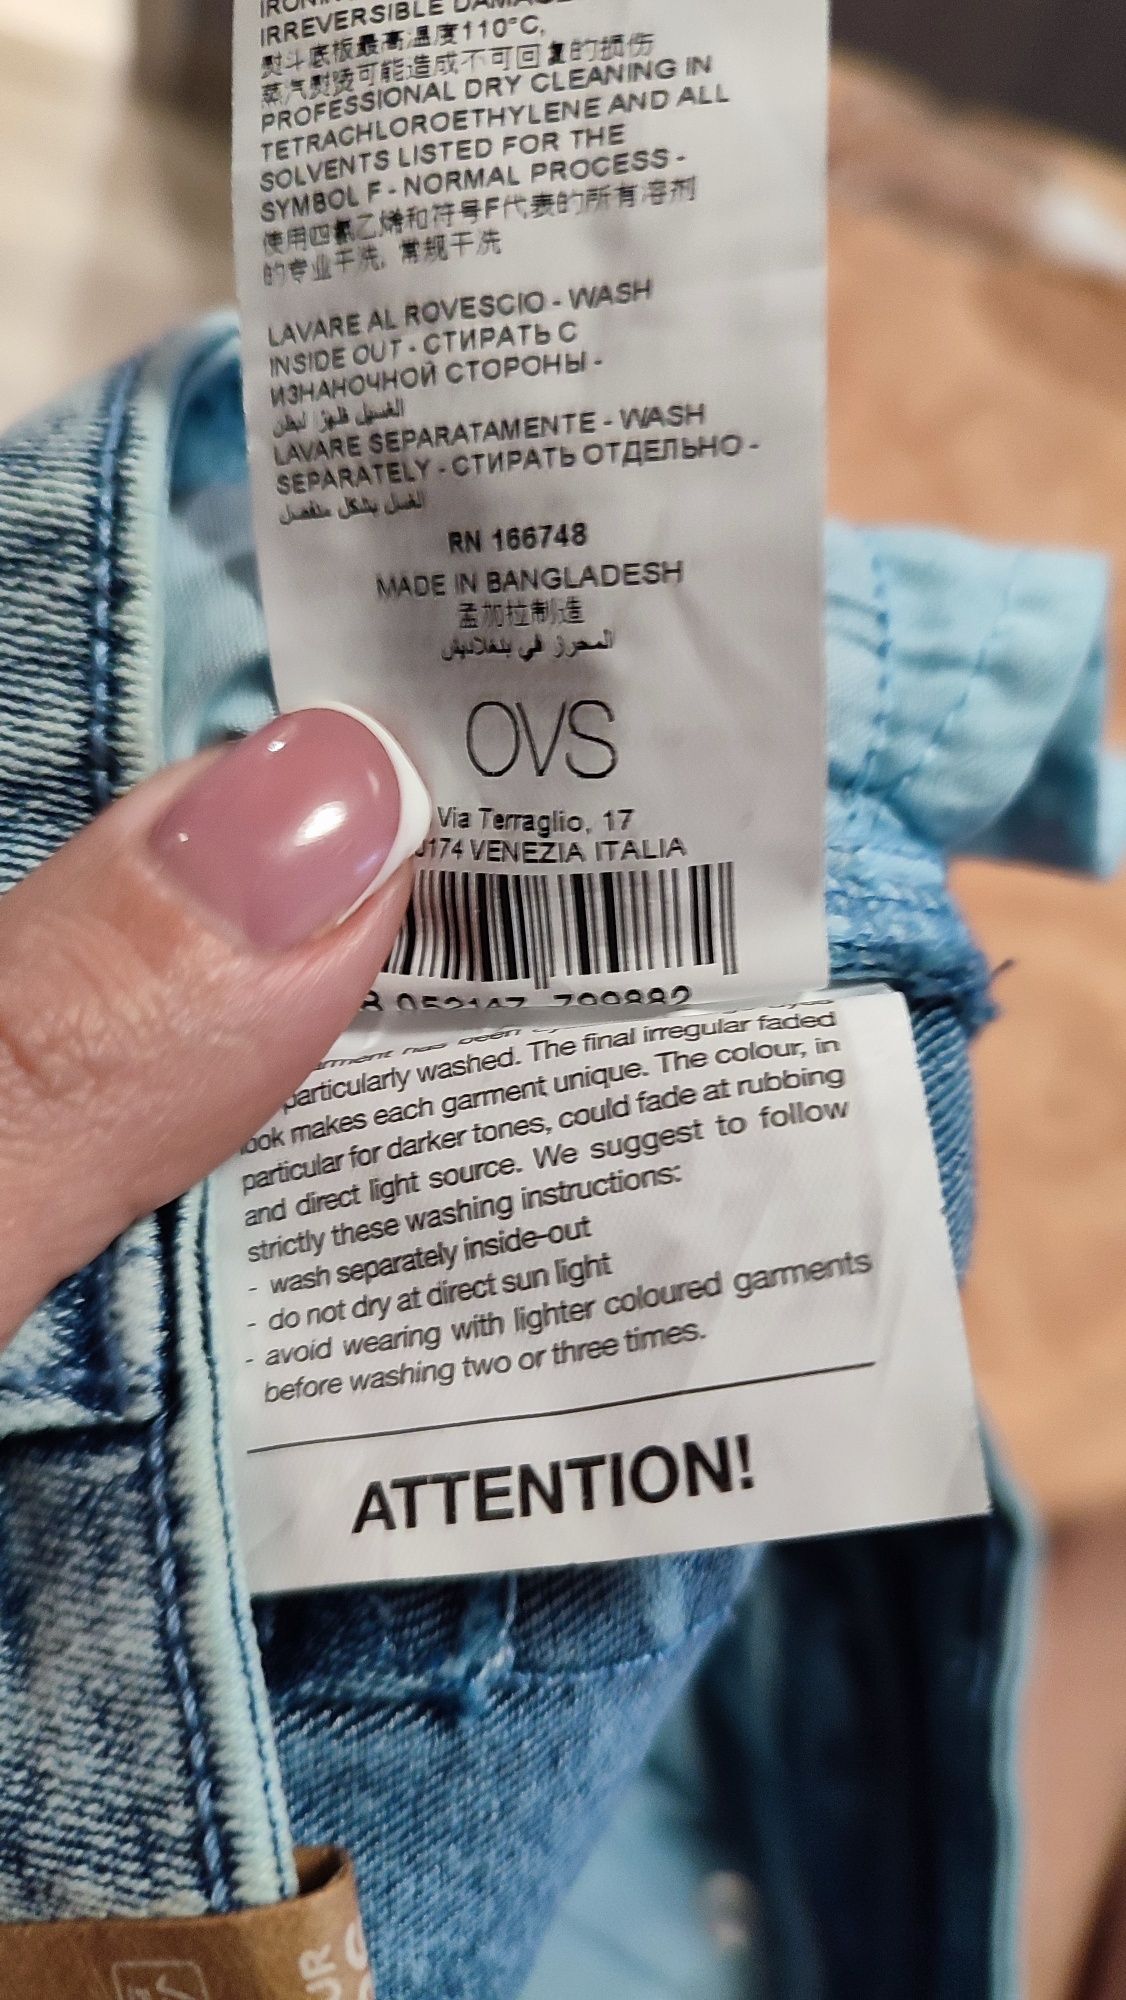 Скини skinny джинсы OVS женские EUR 36